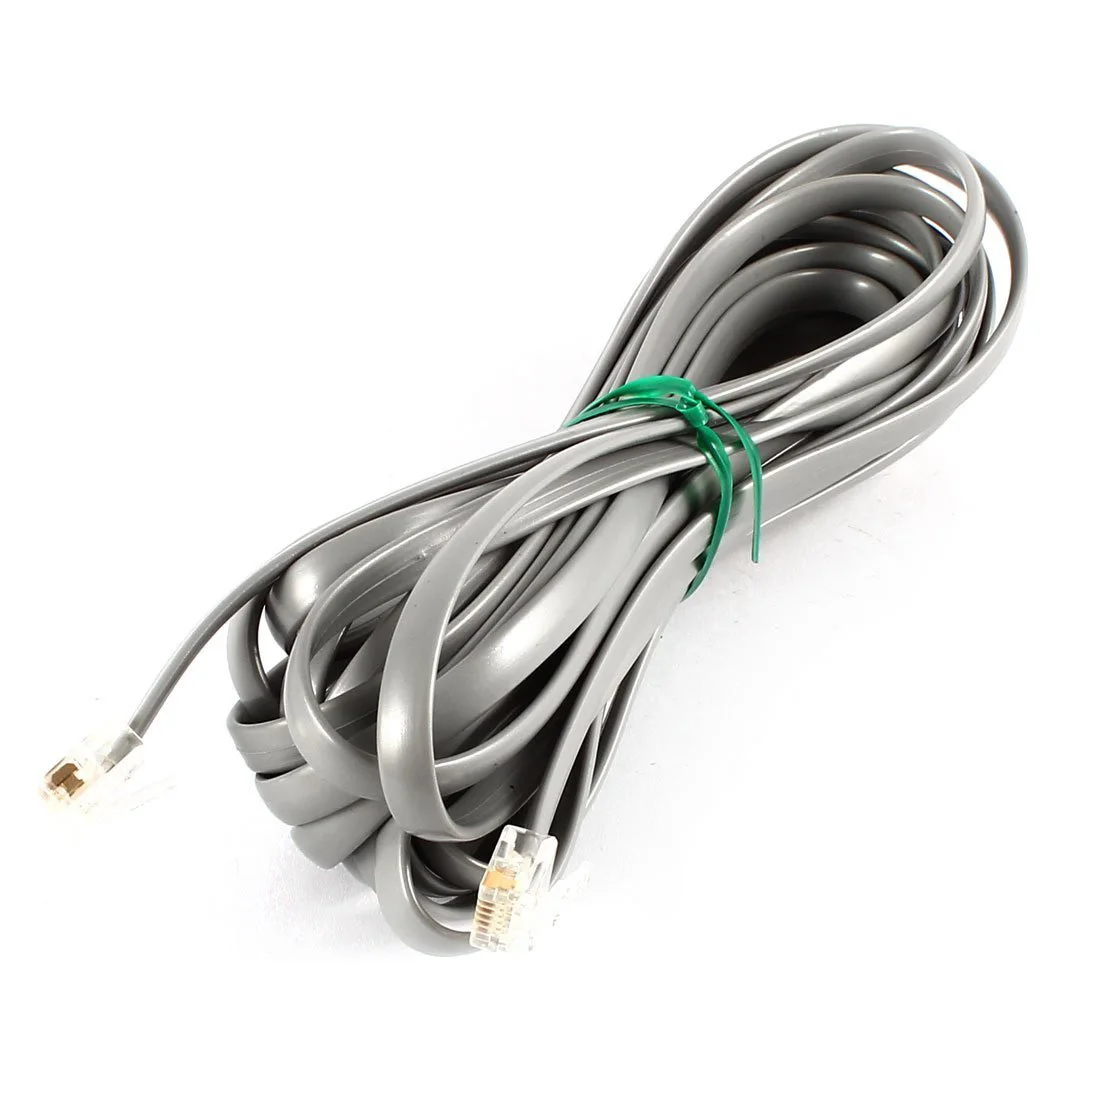 Распродажа серых пластиковых лапш 6P6C RJ11 M/M плоский телефонный кабель 5 м 16 футов